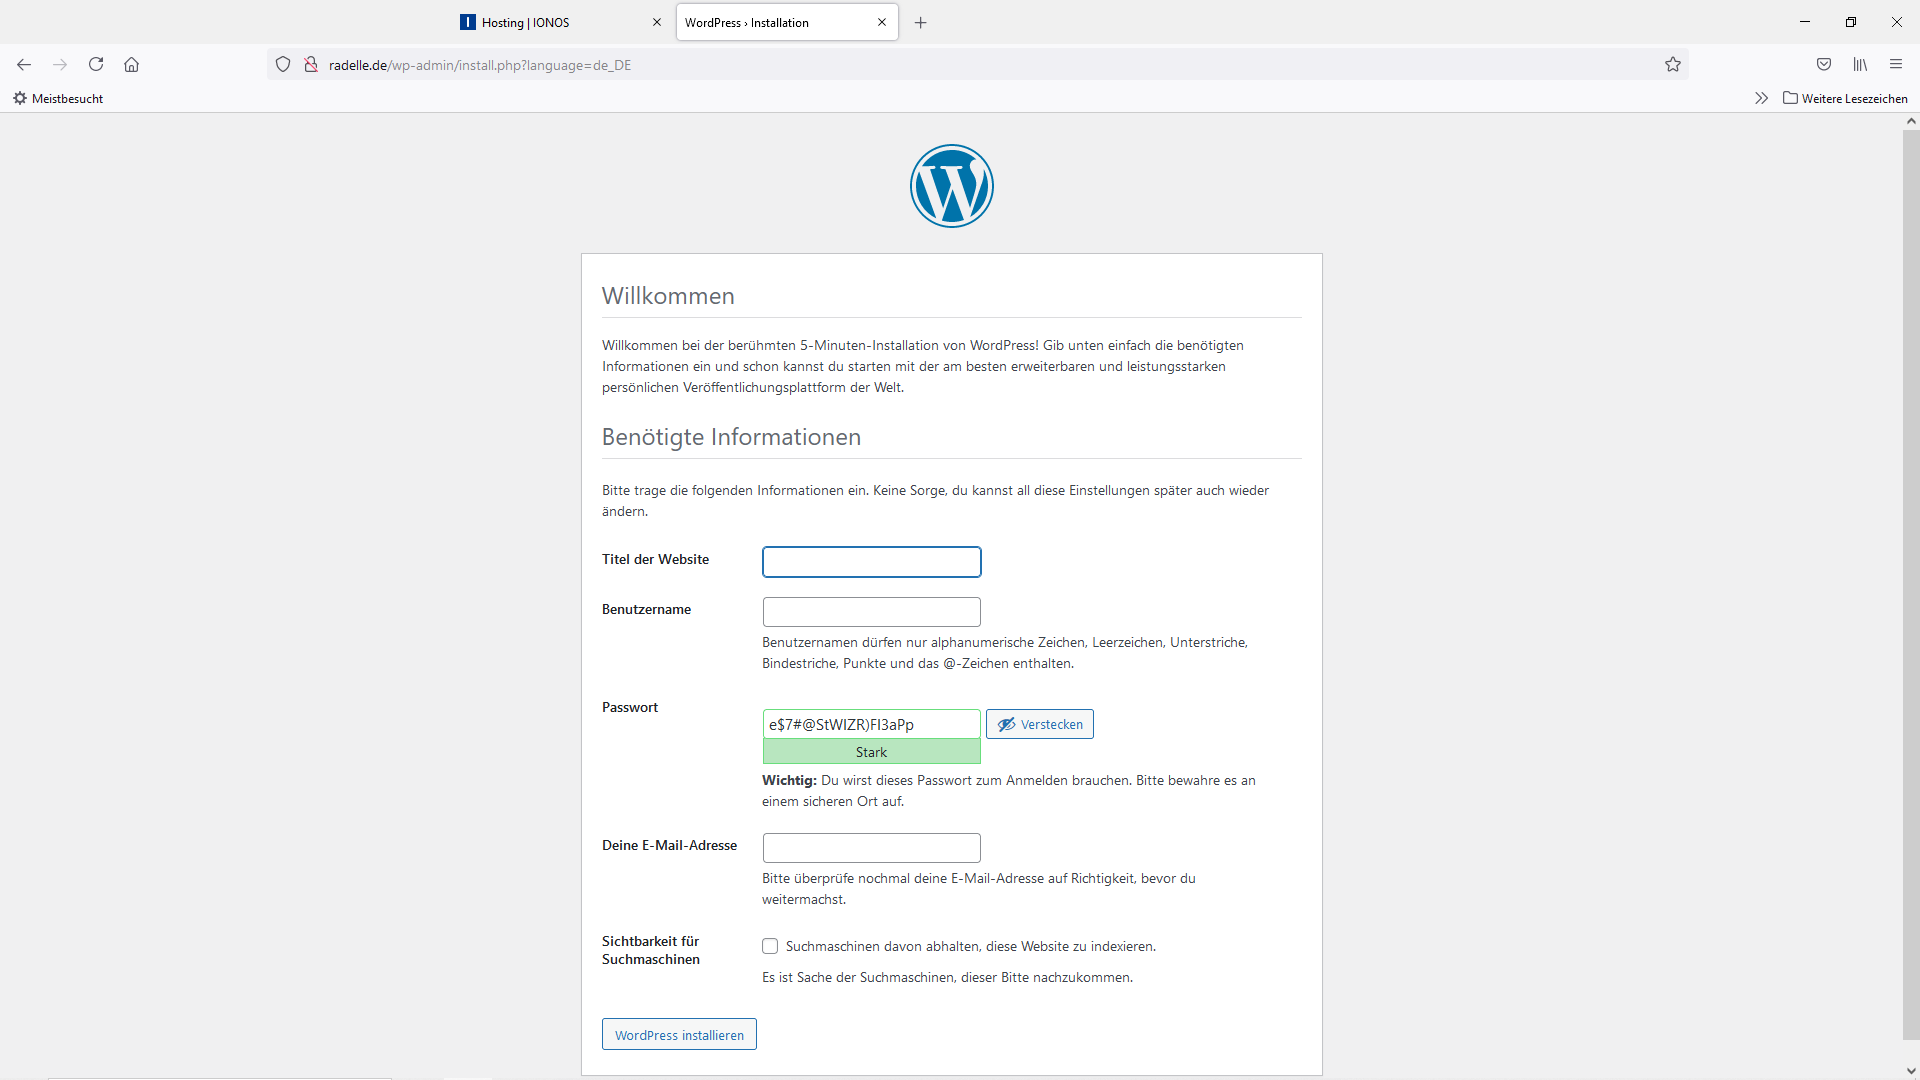 WordPress Installation beendet Angaben zum Blog machen